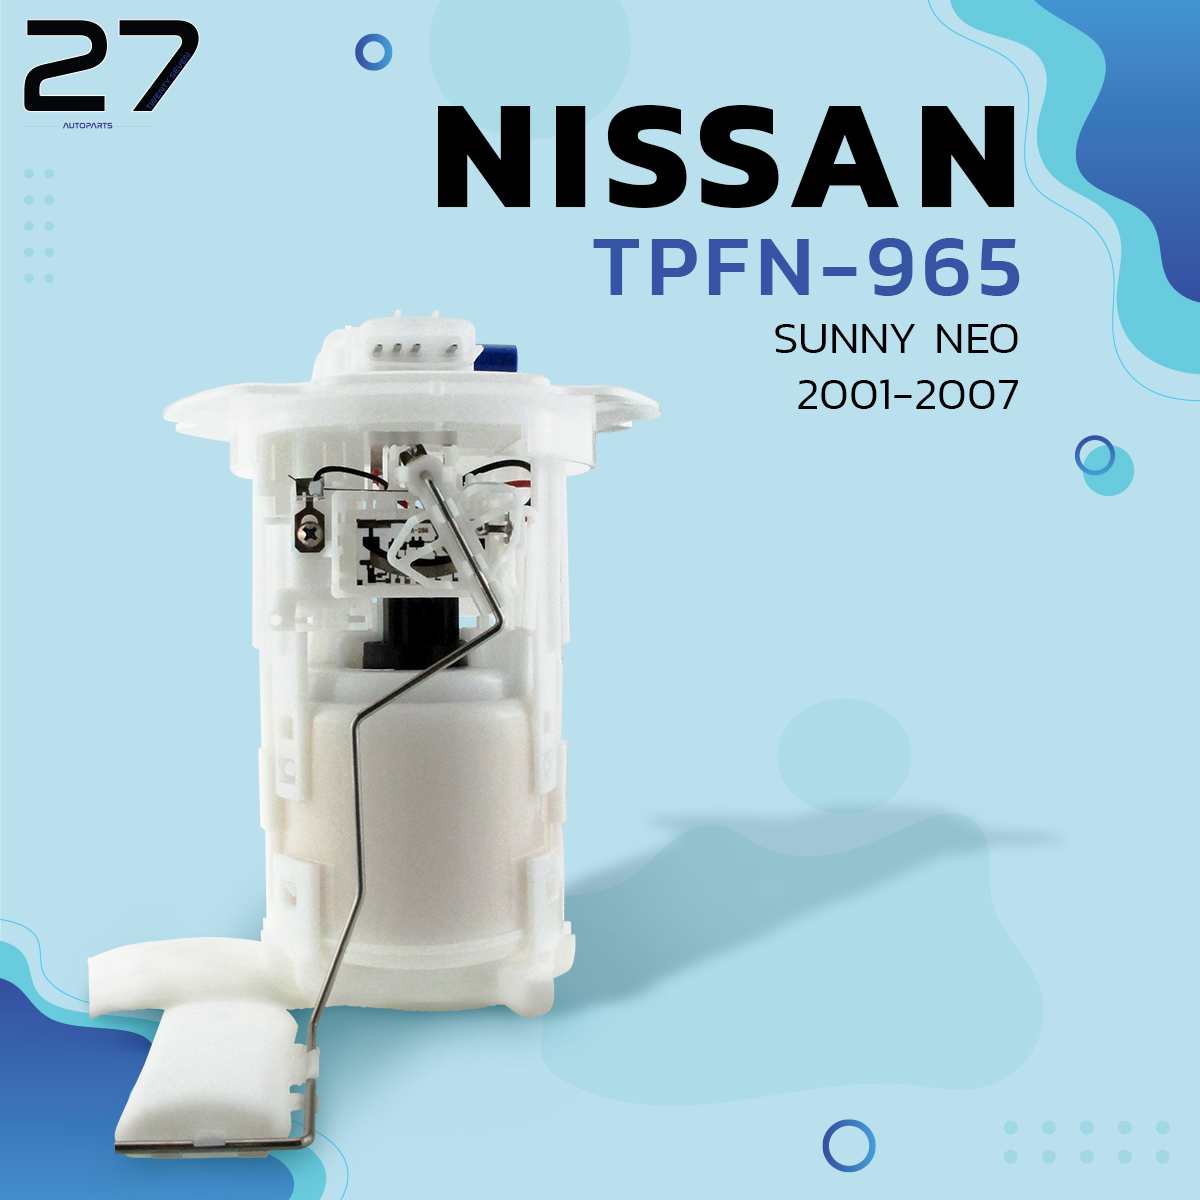 ปั๊มติ๊ก พร้อมโครงลูกลอยครบชุด NISSAN SUNNY NEO 2001-2007 รหัส TPFN-965 TOP PERFORMANCE ปั้มติ๊ก ของแท้100% MADE IN JAPAN